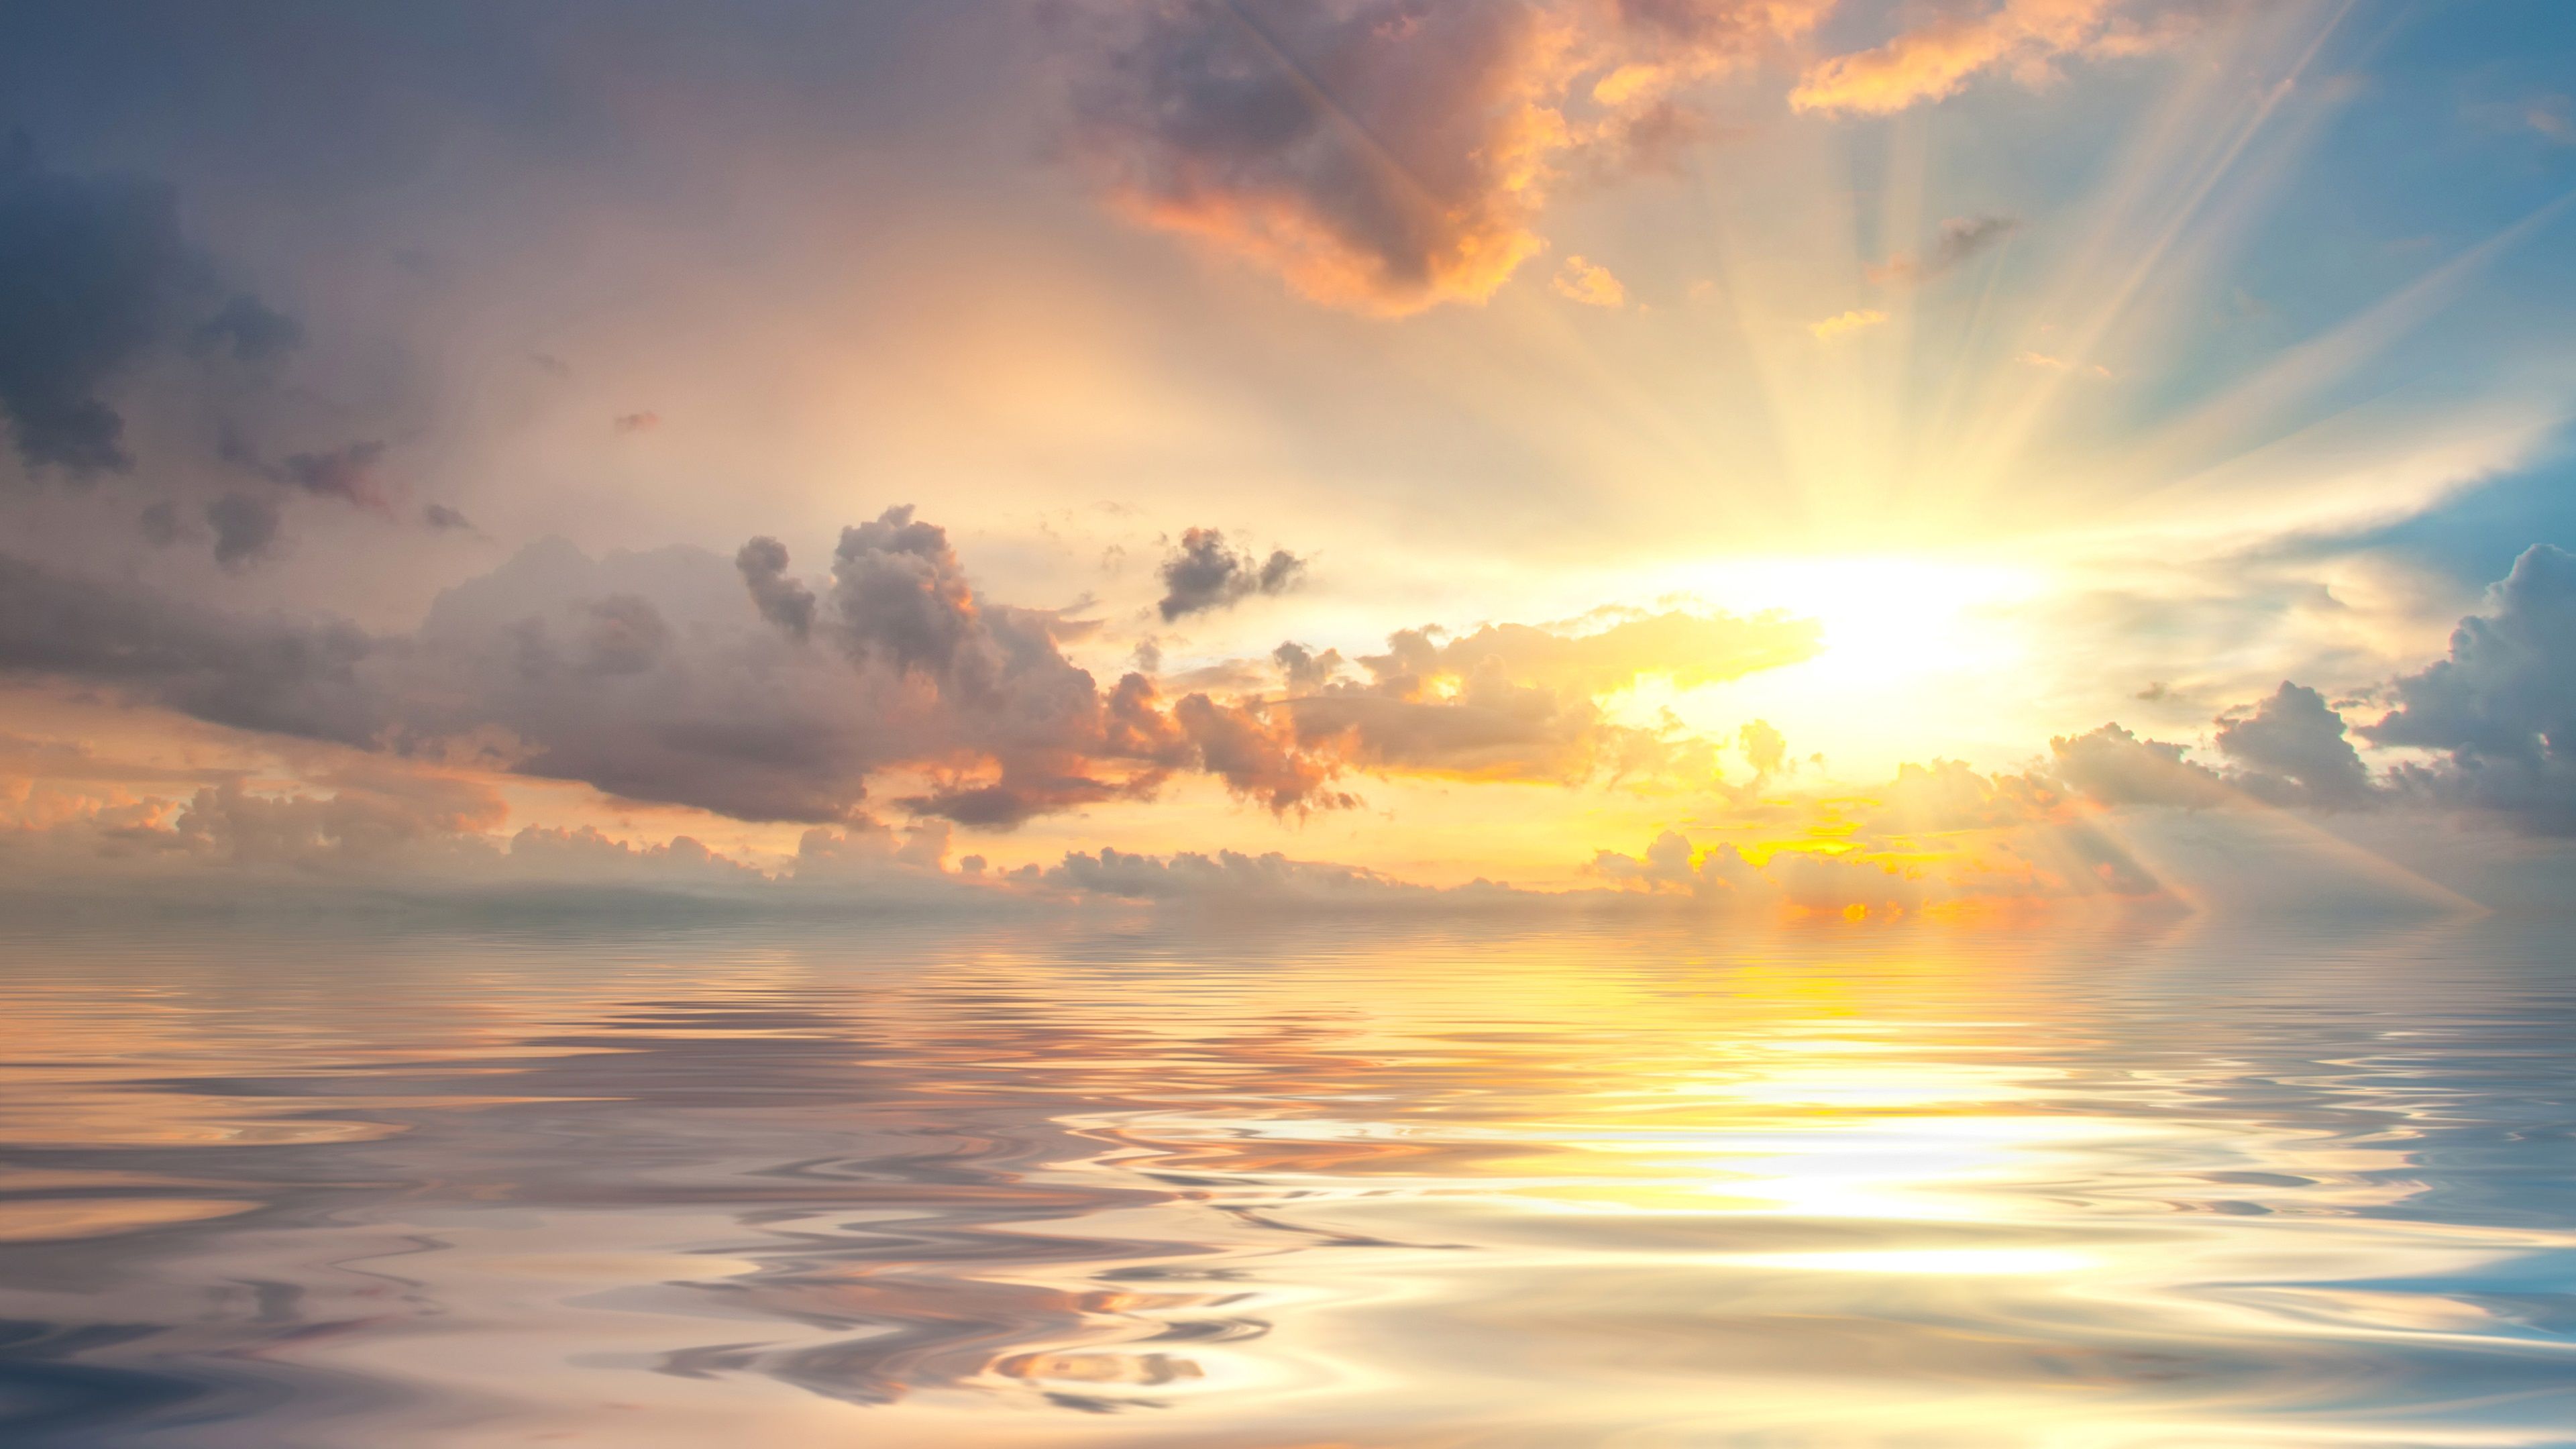 Wallpaper Dawn at sea, sunrise, clouds, beautiful nature landscape